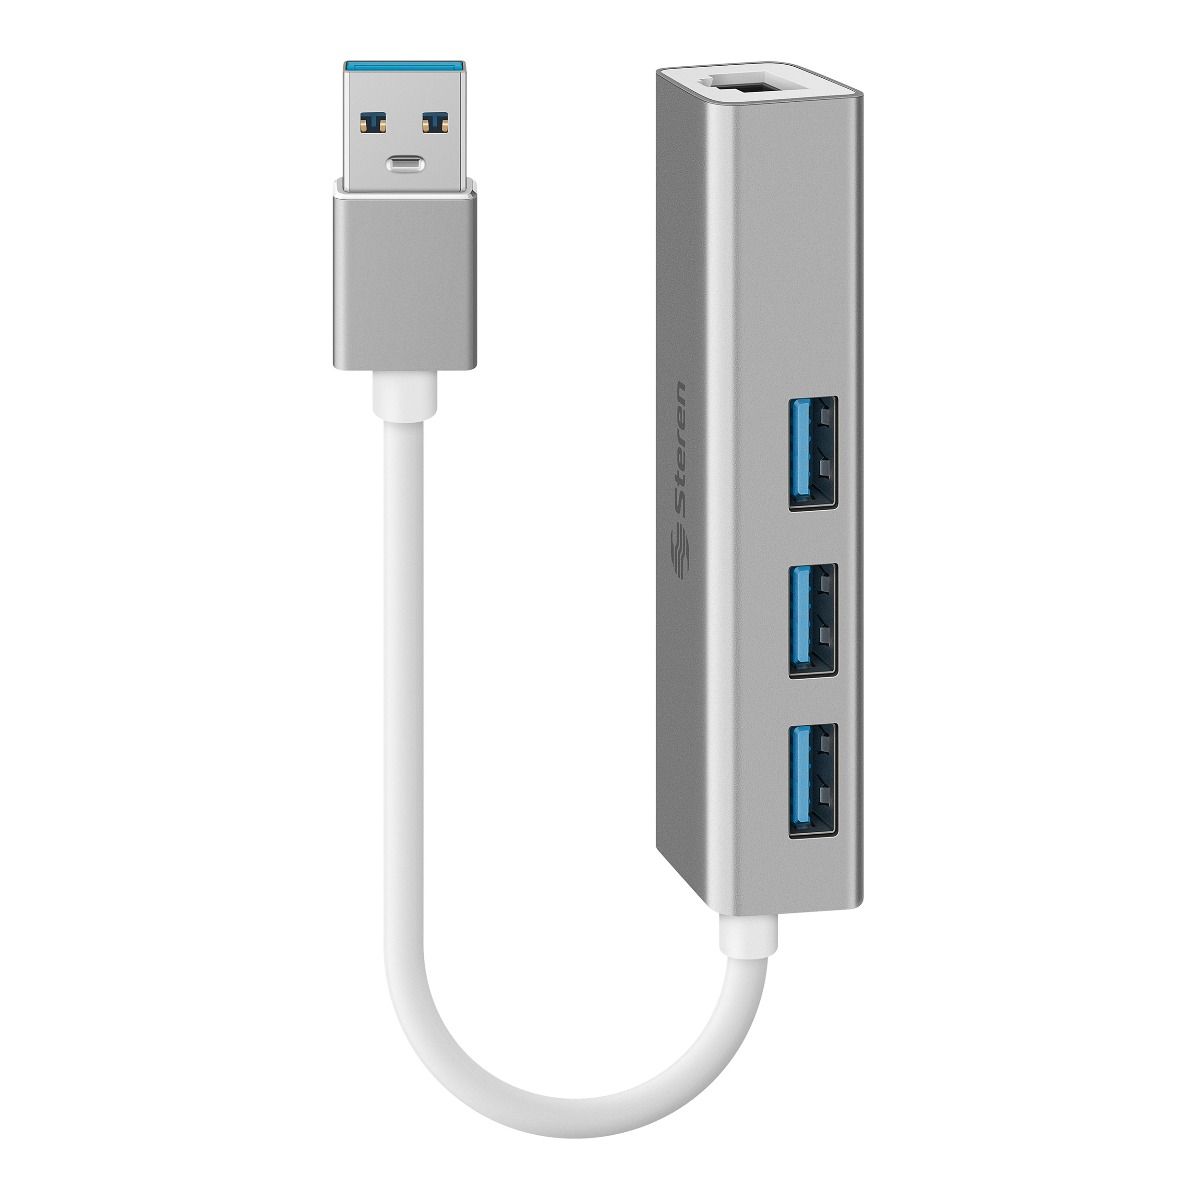 Las mejores ofertas en Conector USB 3.0 un cables USB, hubs y adaptadores